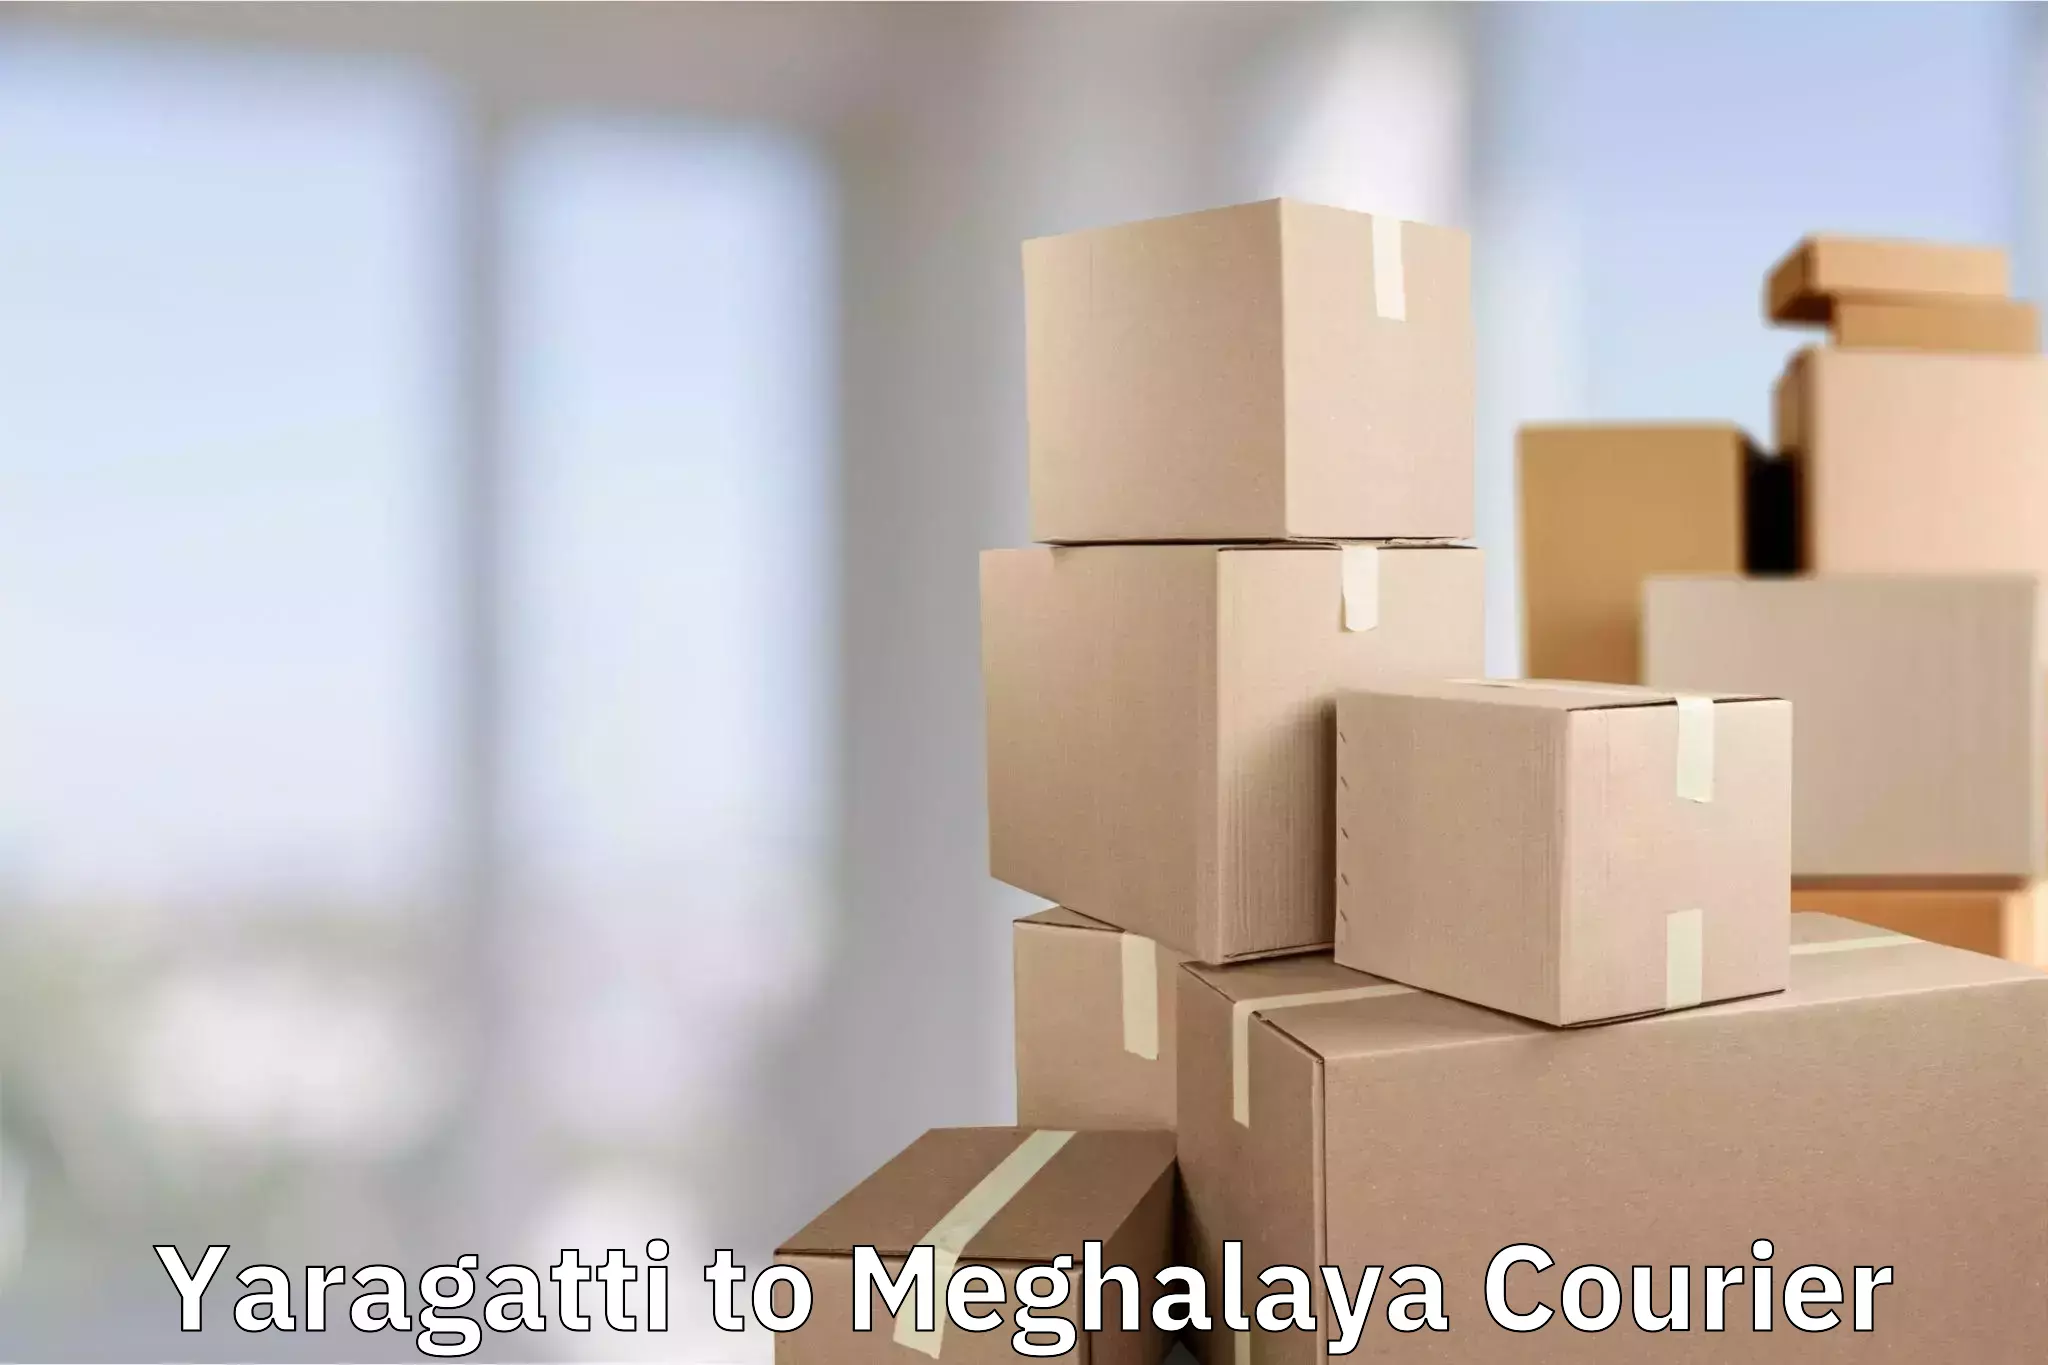 Personal effects shipping Yaragatti to Meghalaya